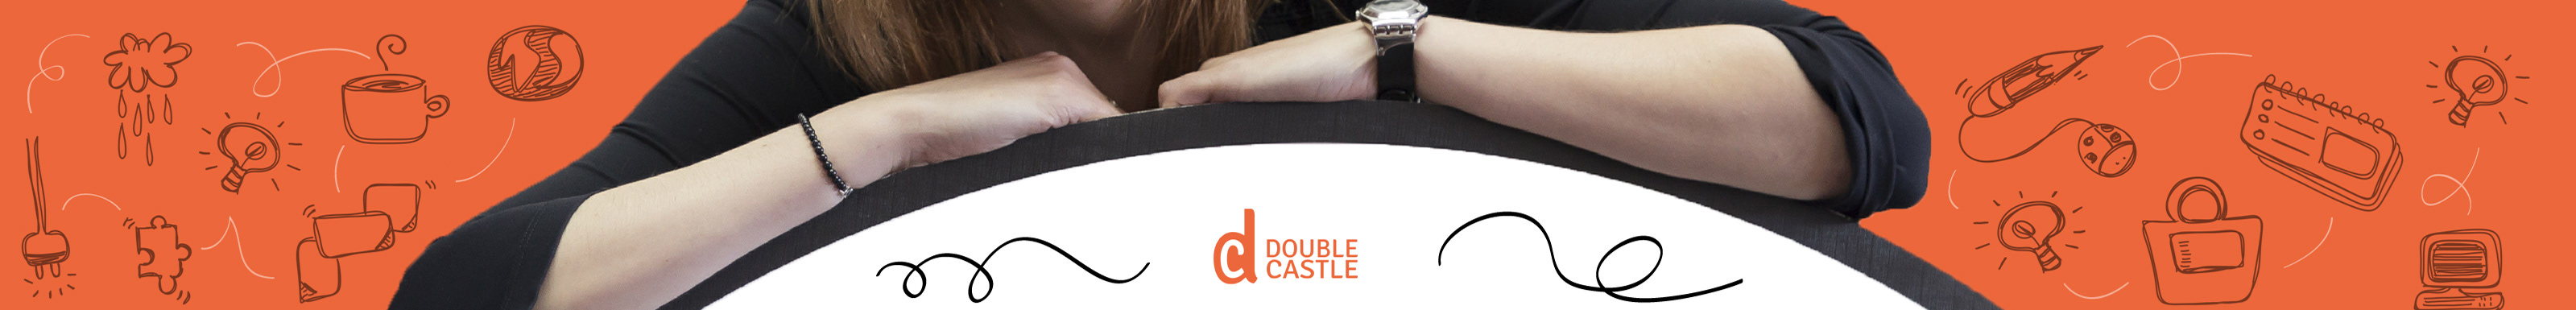 Double Castle's profile banner